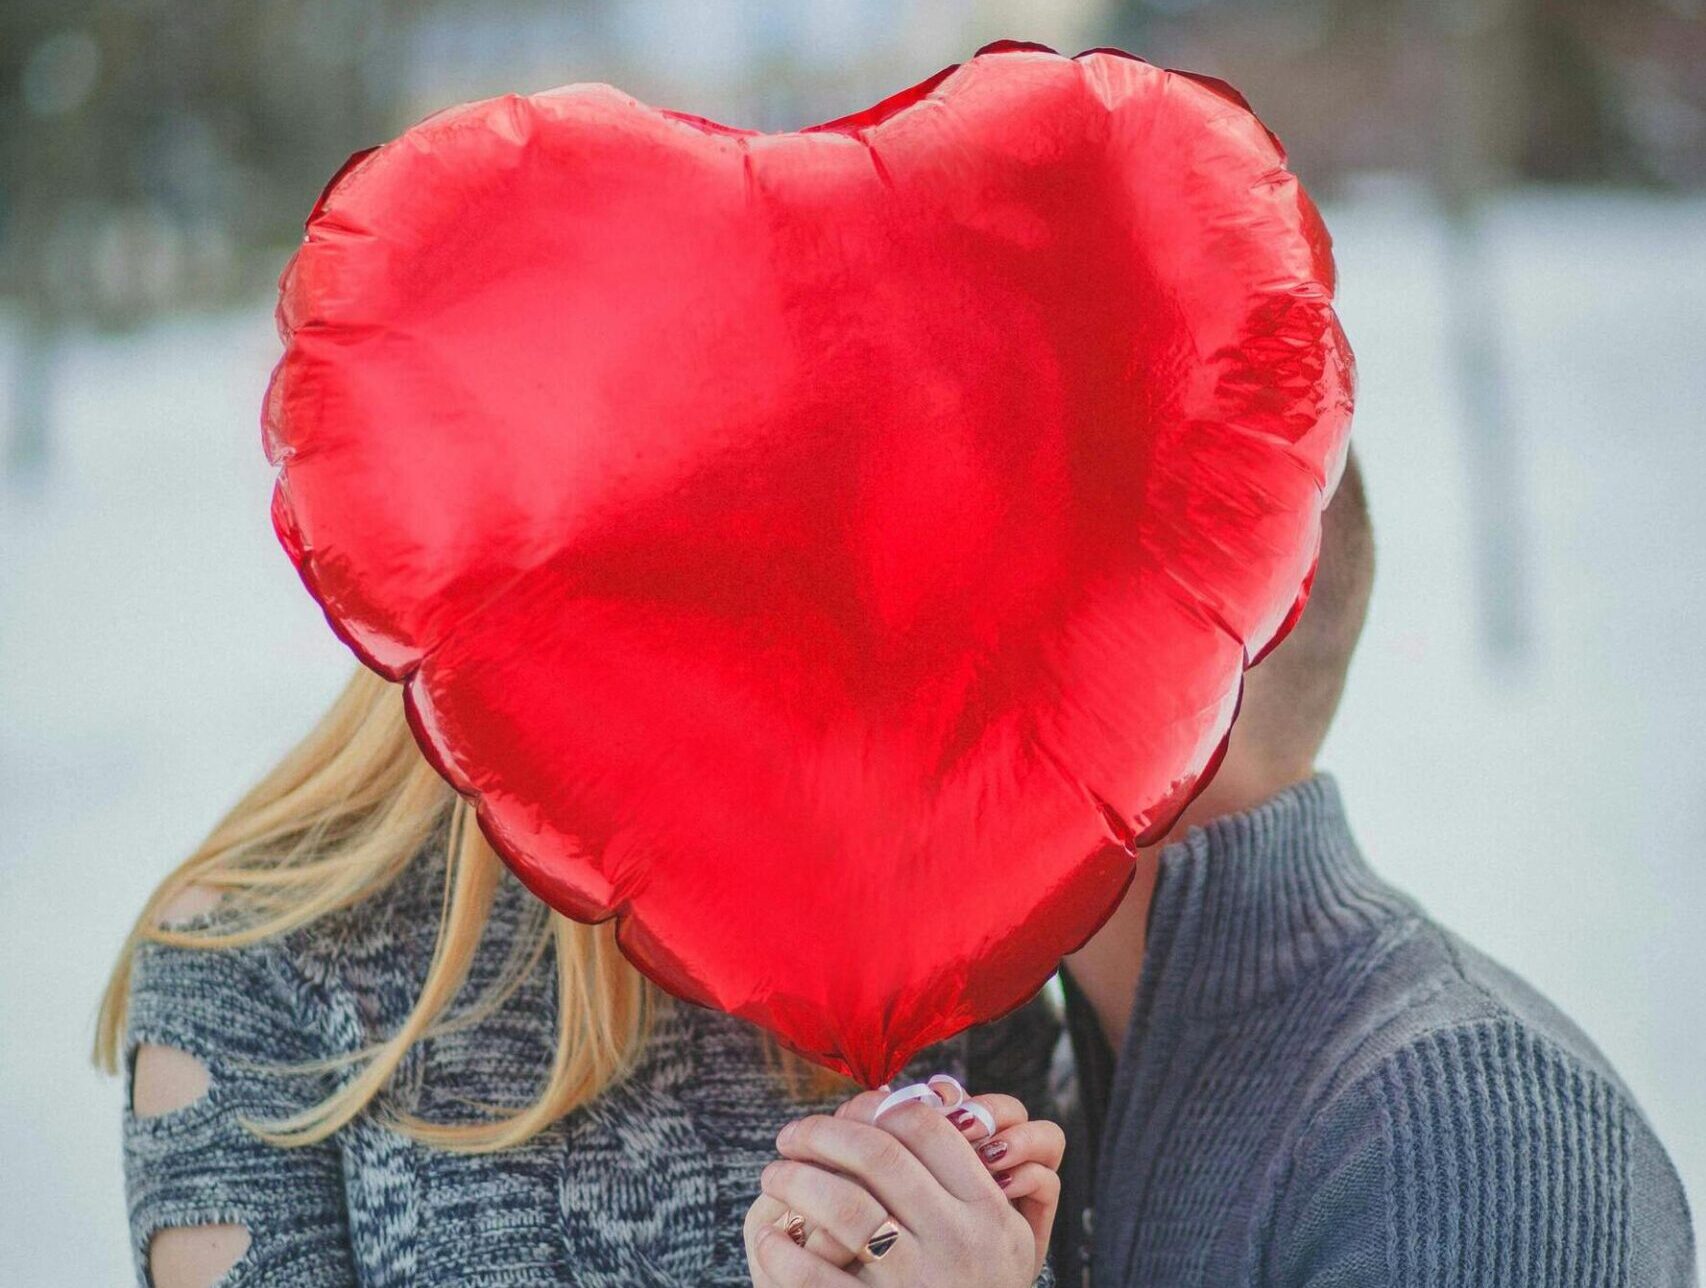 serce, miłość pexels-natalie-bond-1445903